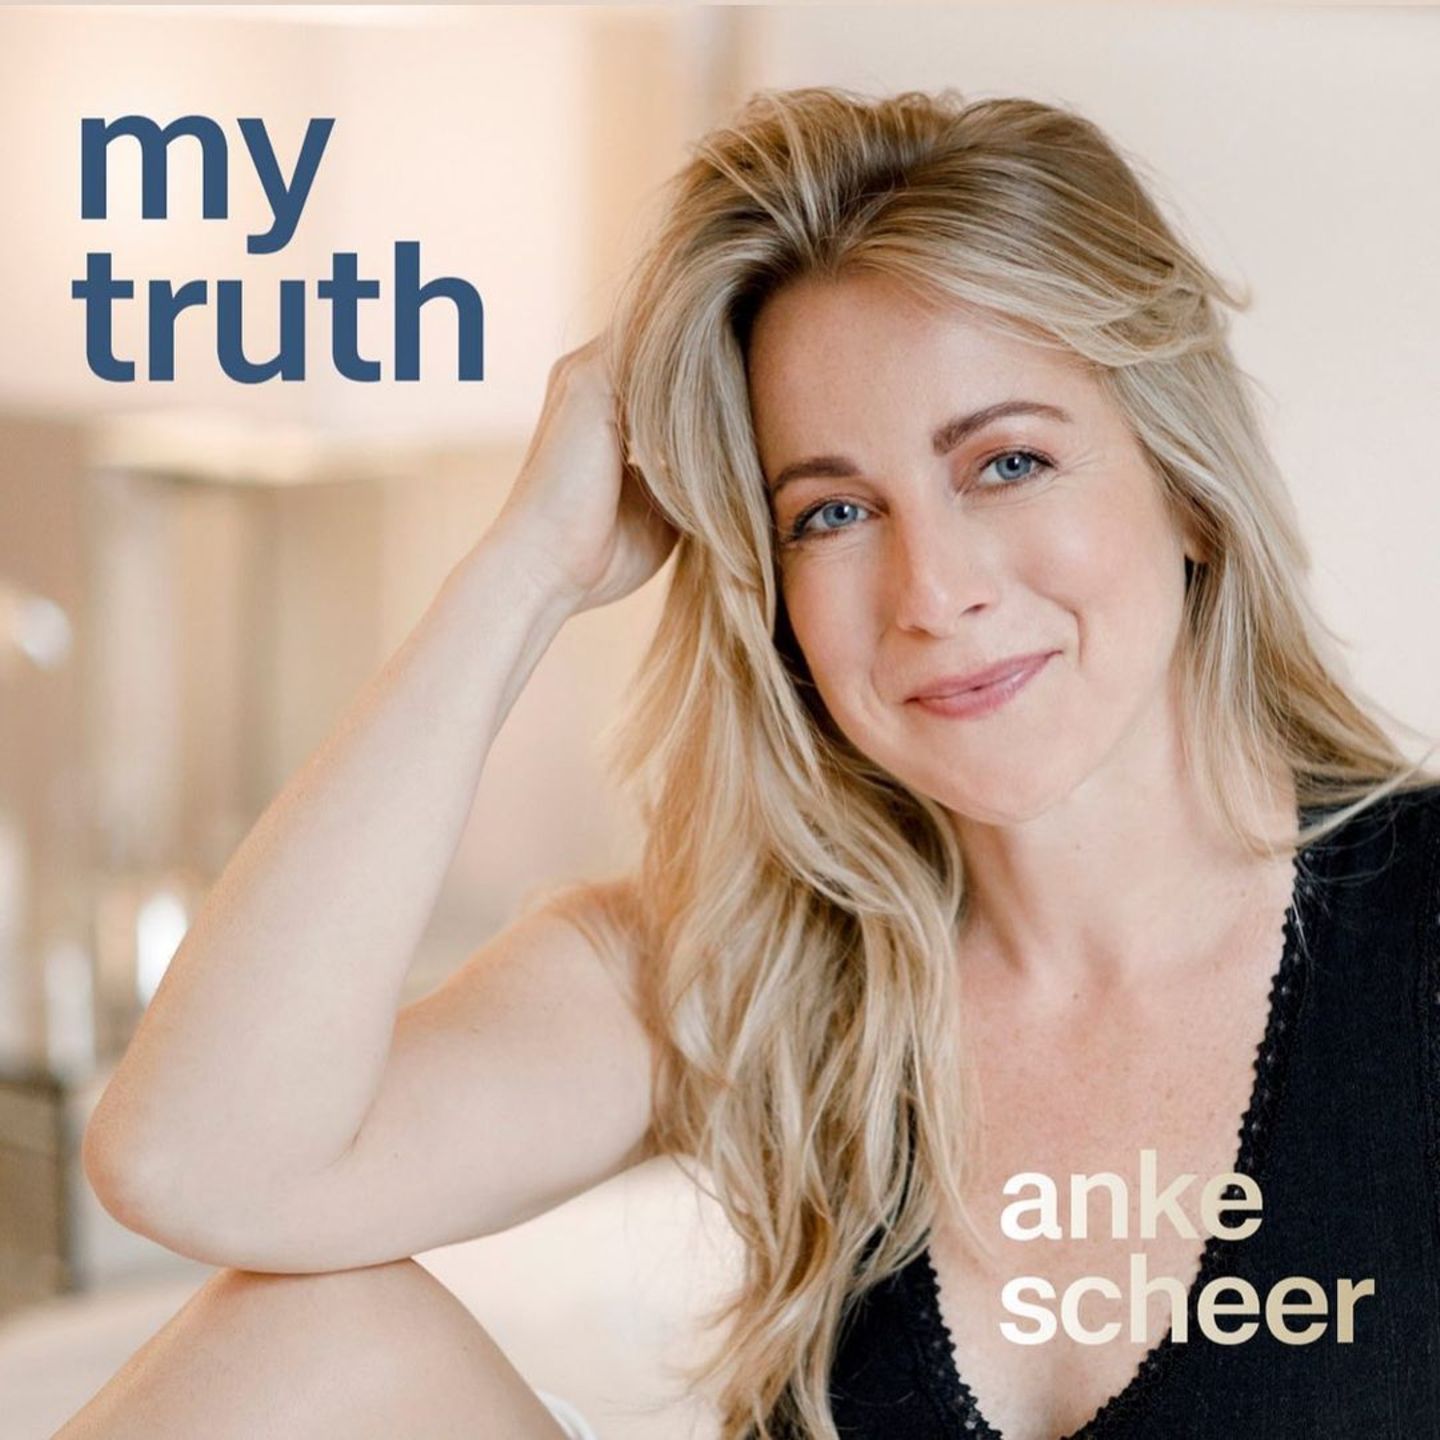 "My truth" von Anke Scheer